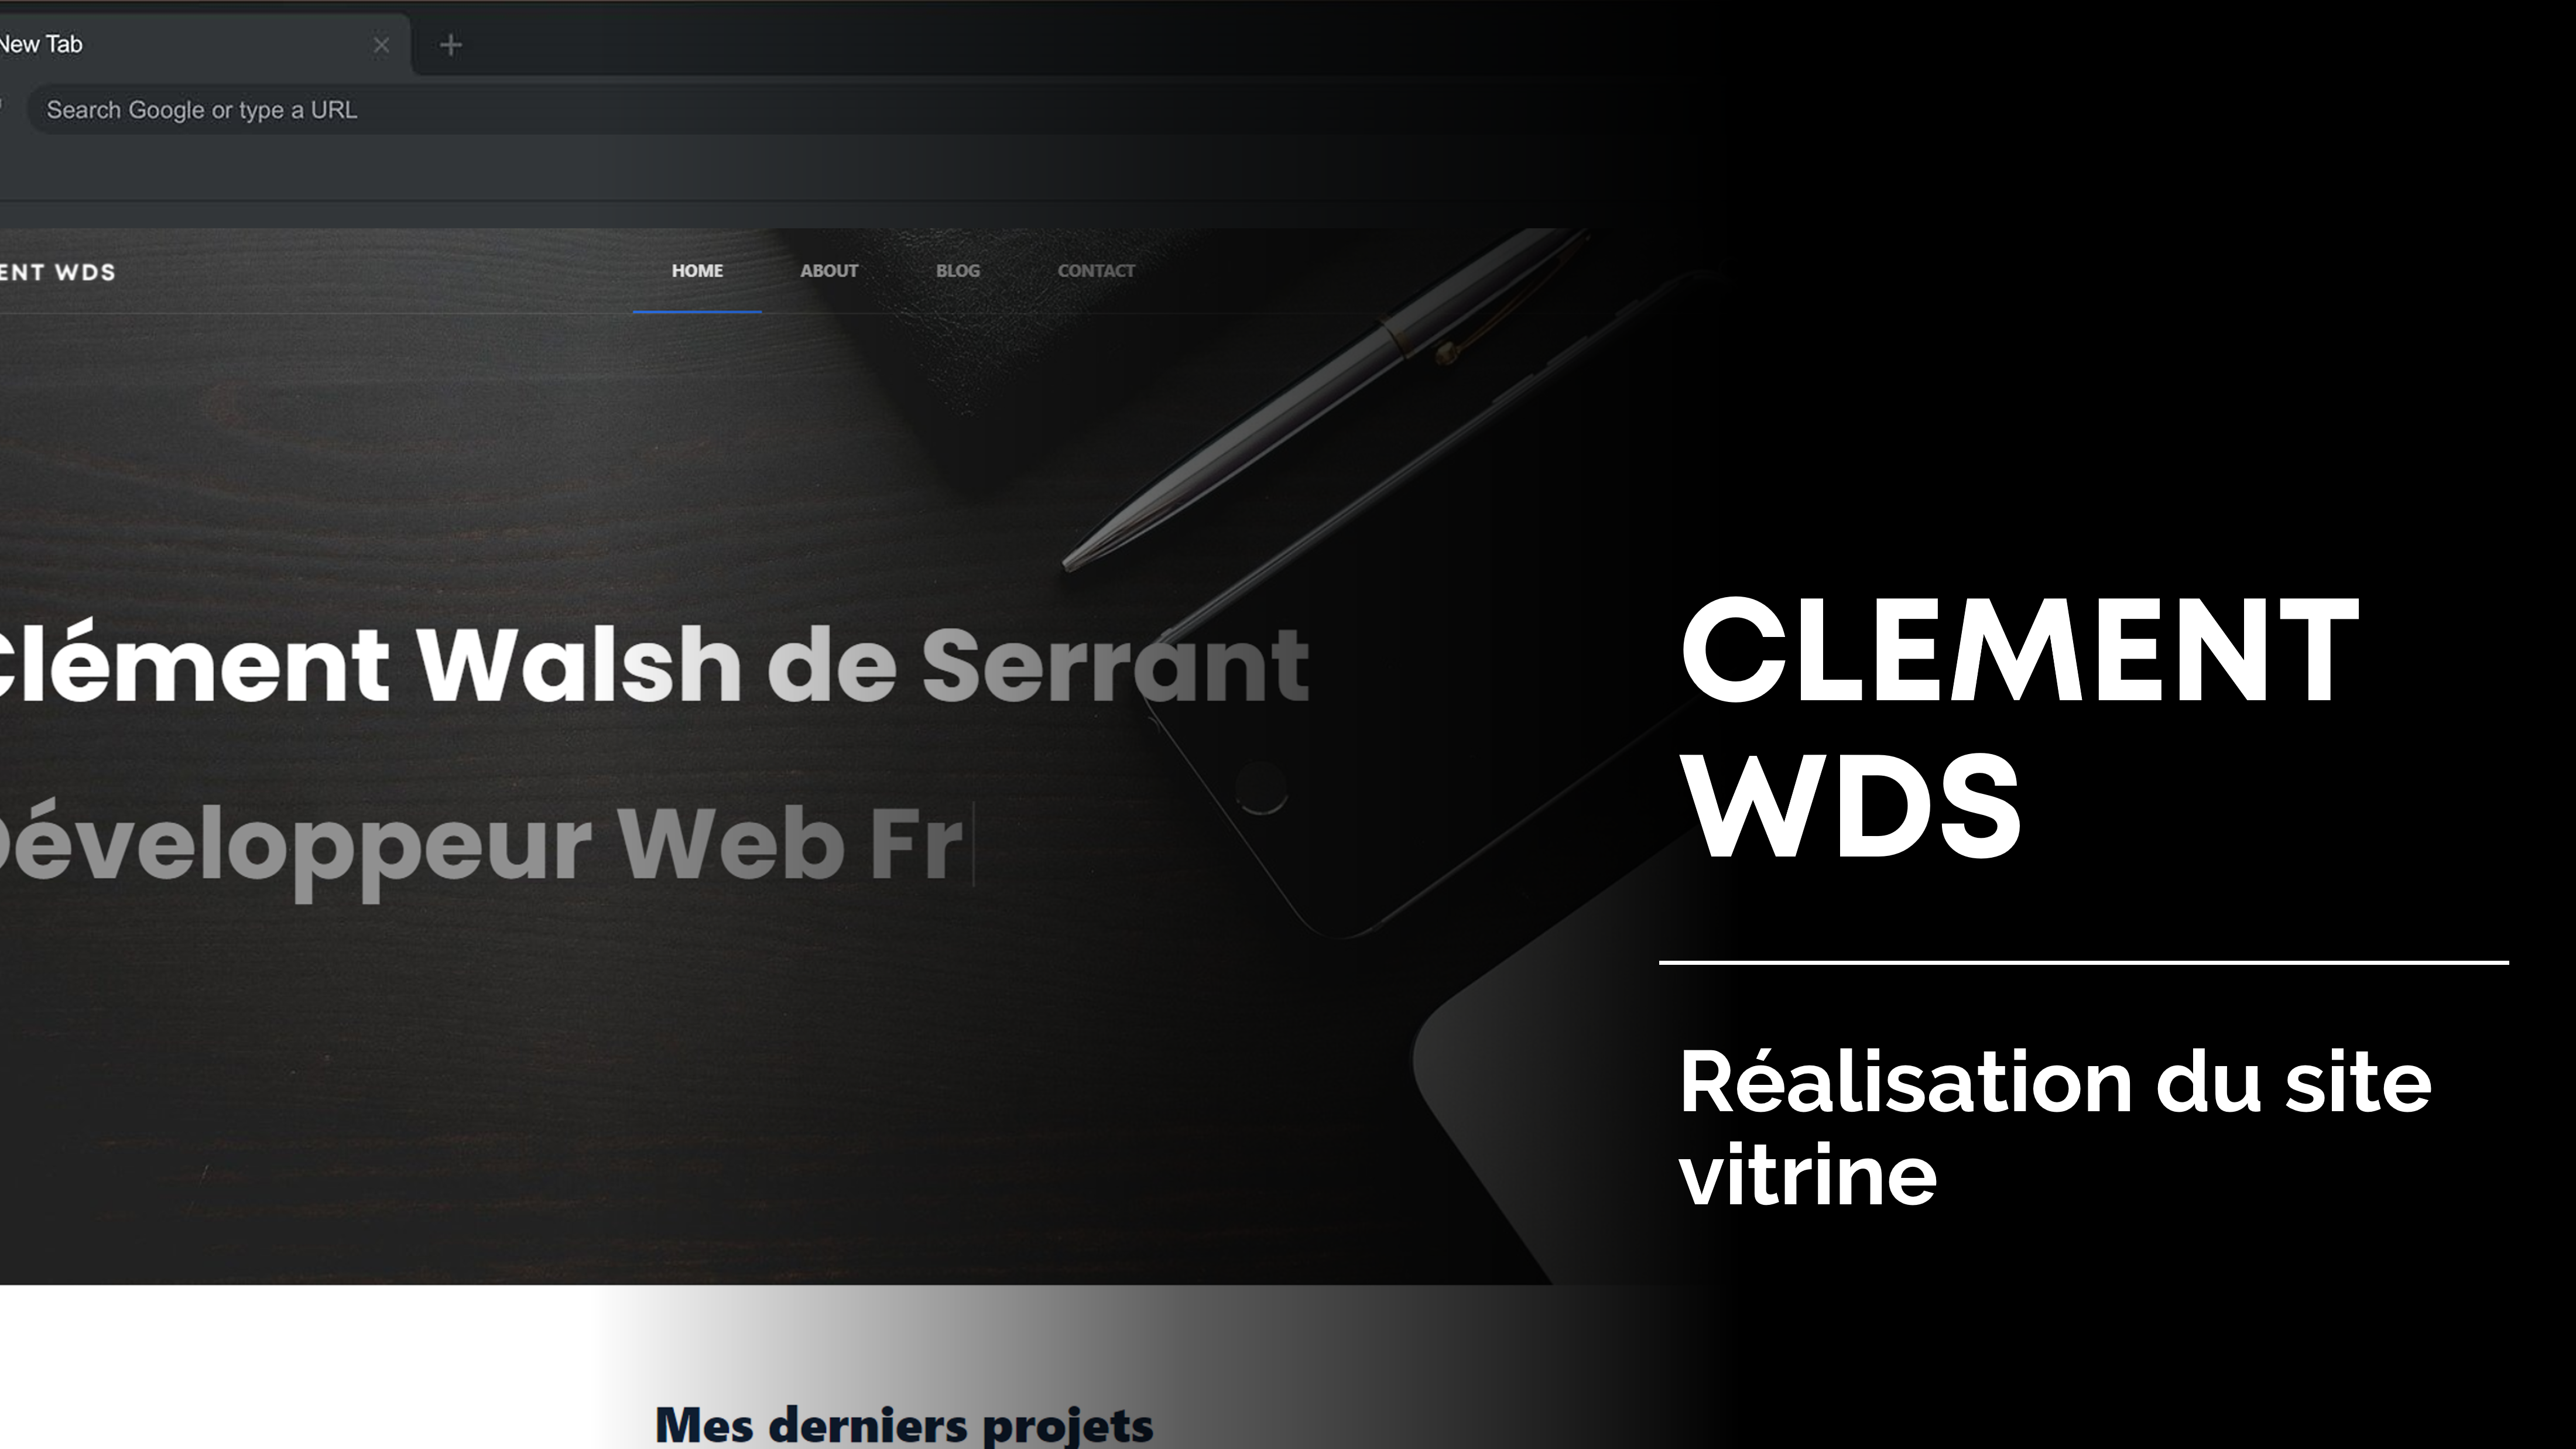 Agence Web - Clément Wds